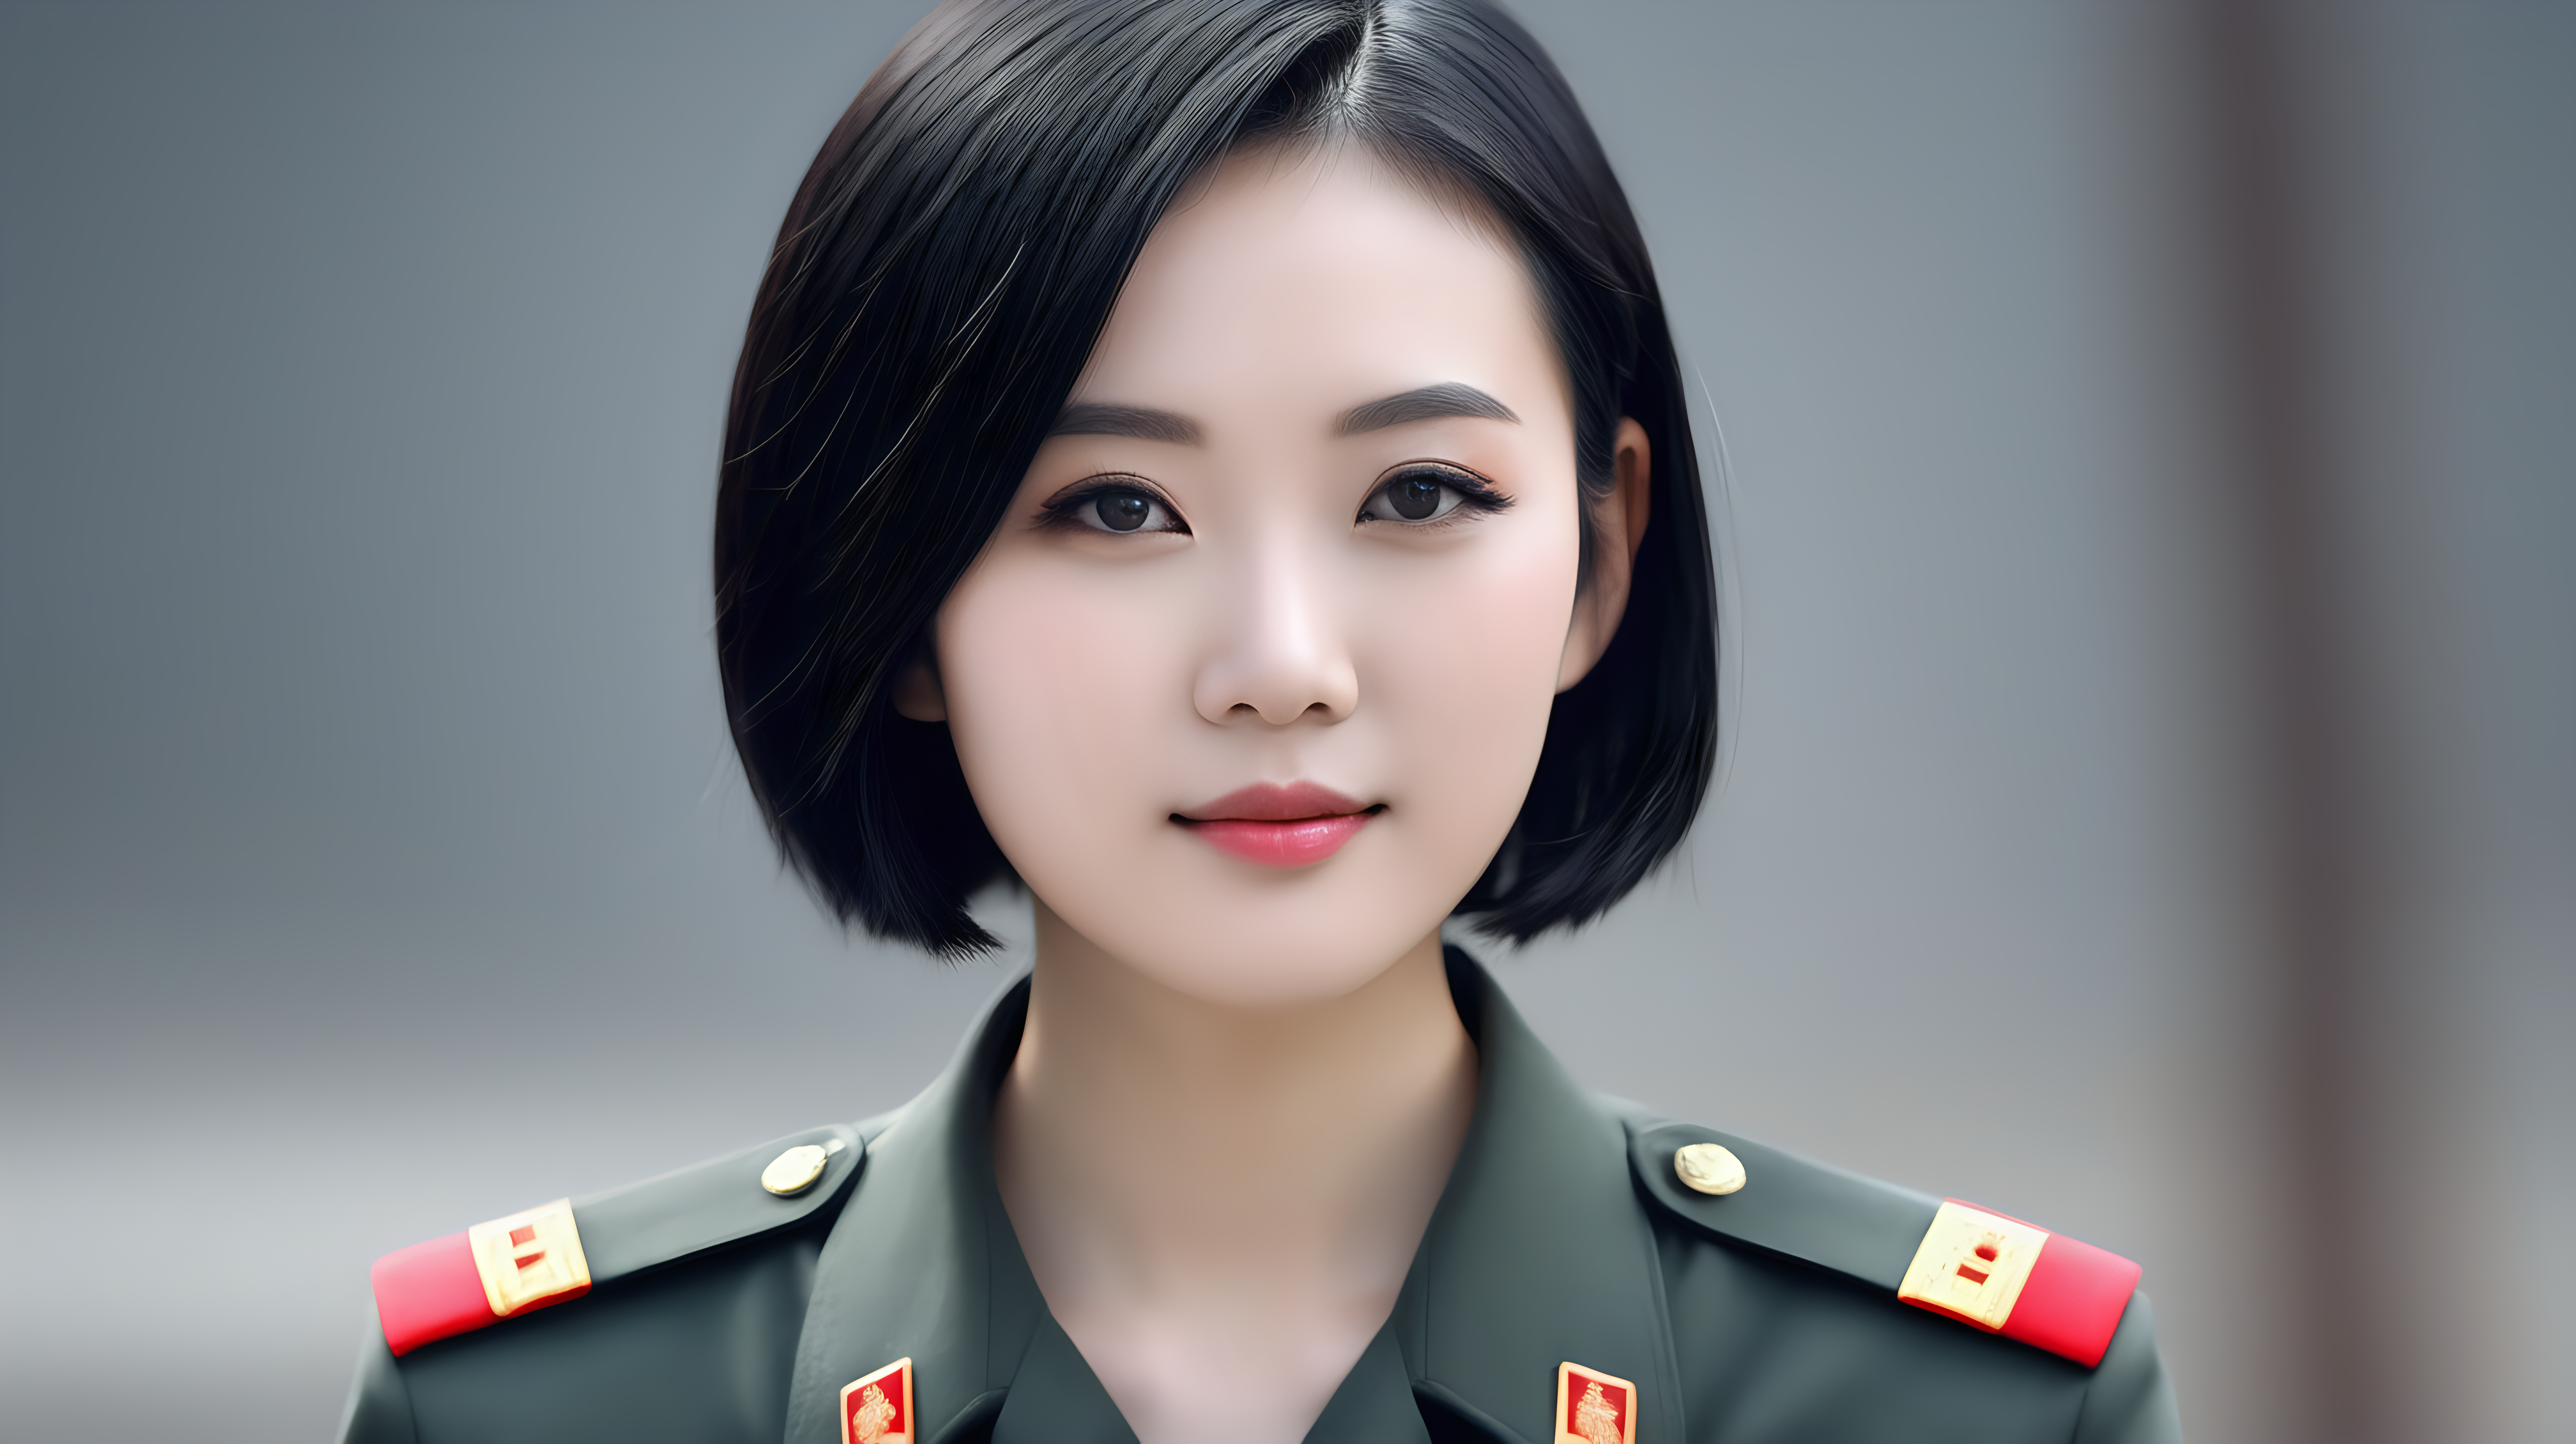 一名中国青年女兵
短发
黑发
主持新闻